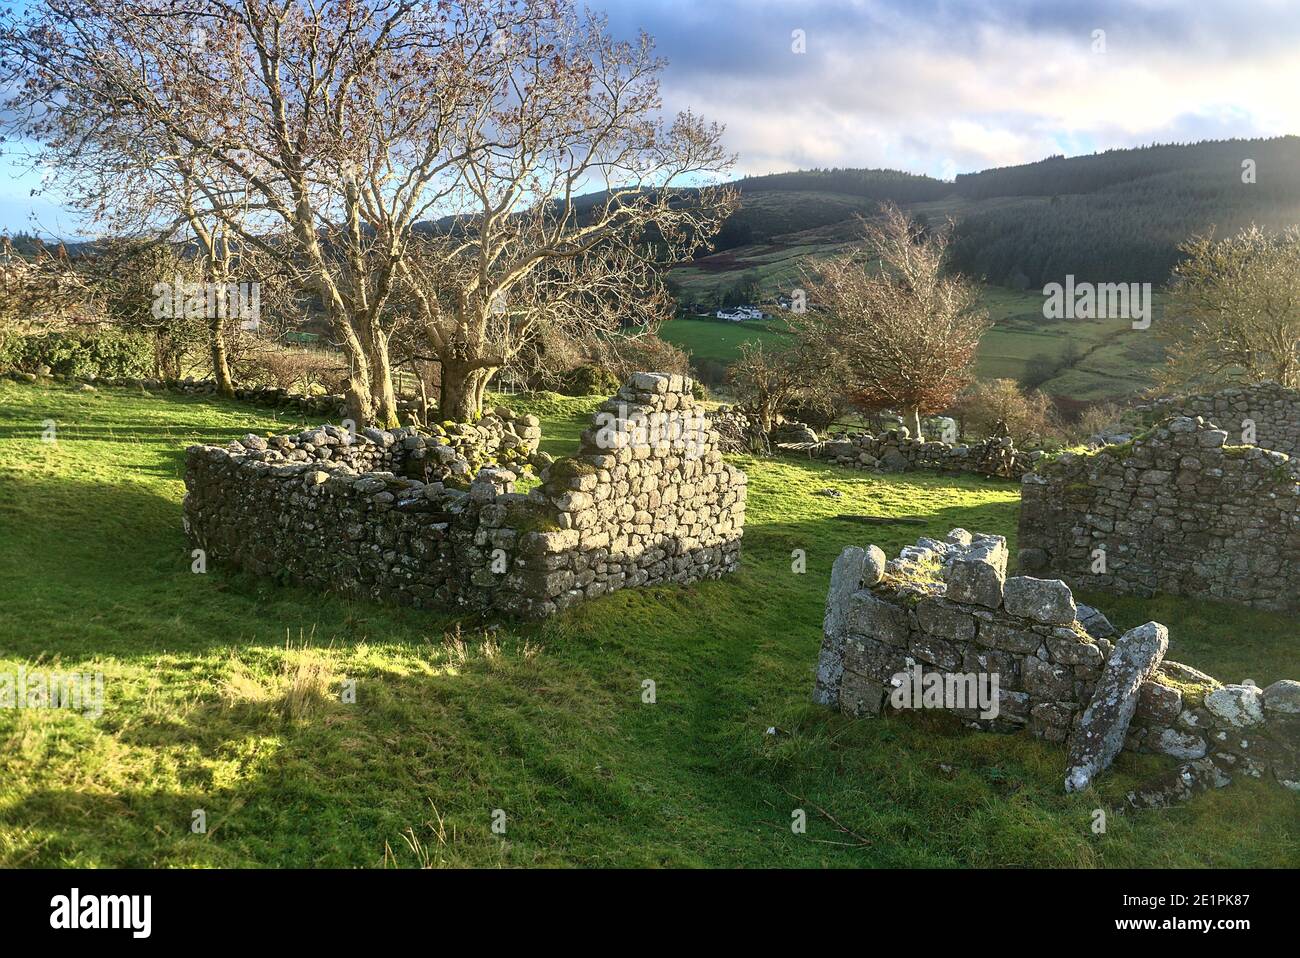 Ruines de petits bâtiments anciens en pierre le long de la route près de la montagne Glendoo, comté de Dublin, Irlande. Ruines historiques Banque D'Images